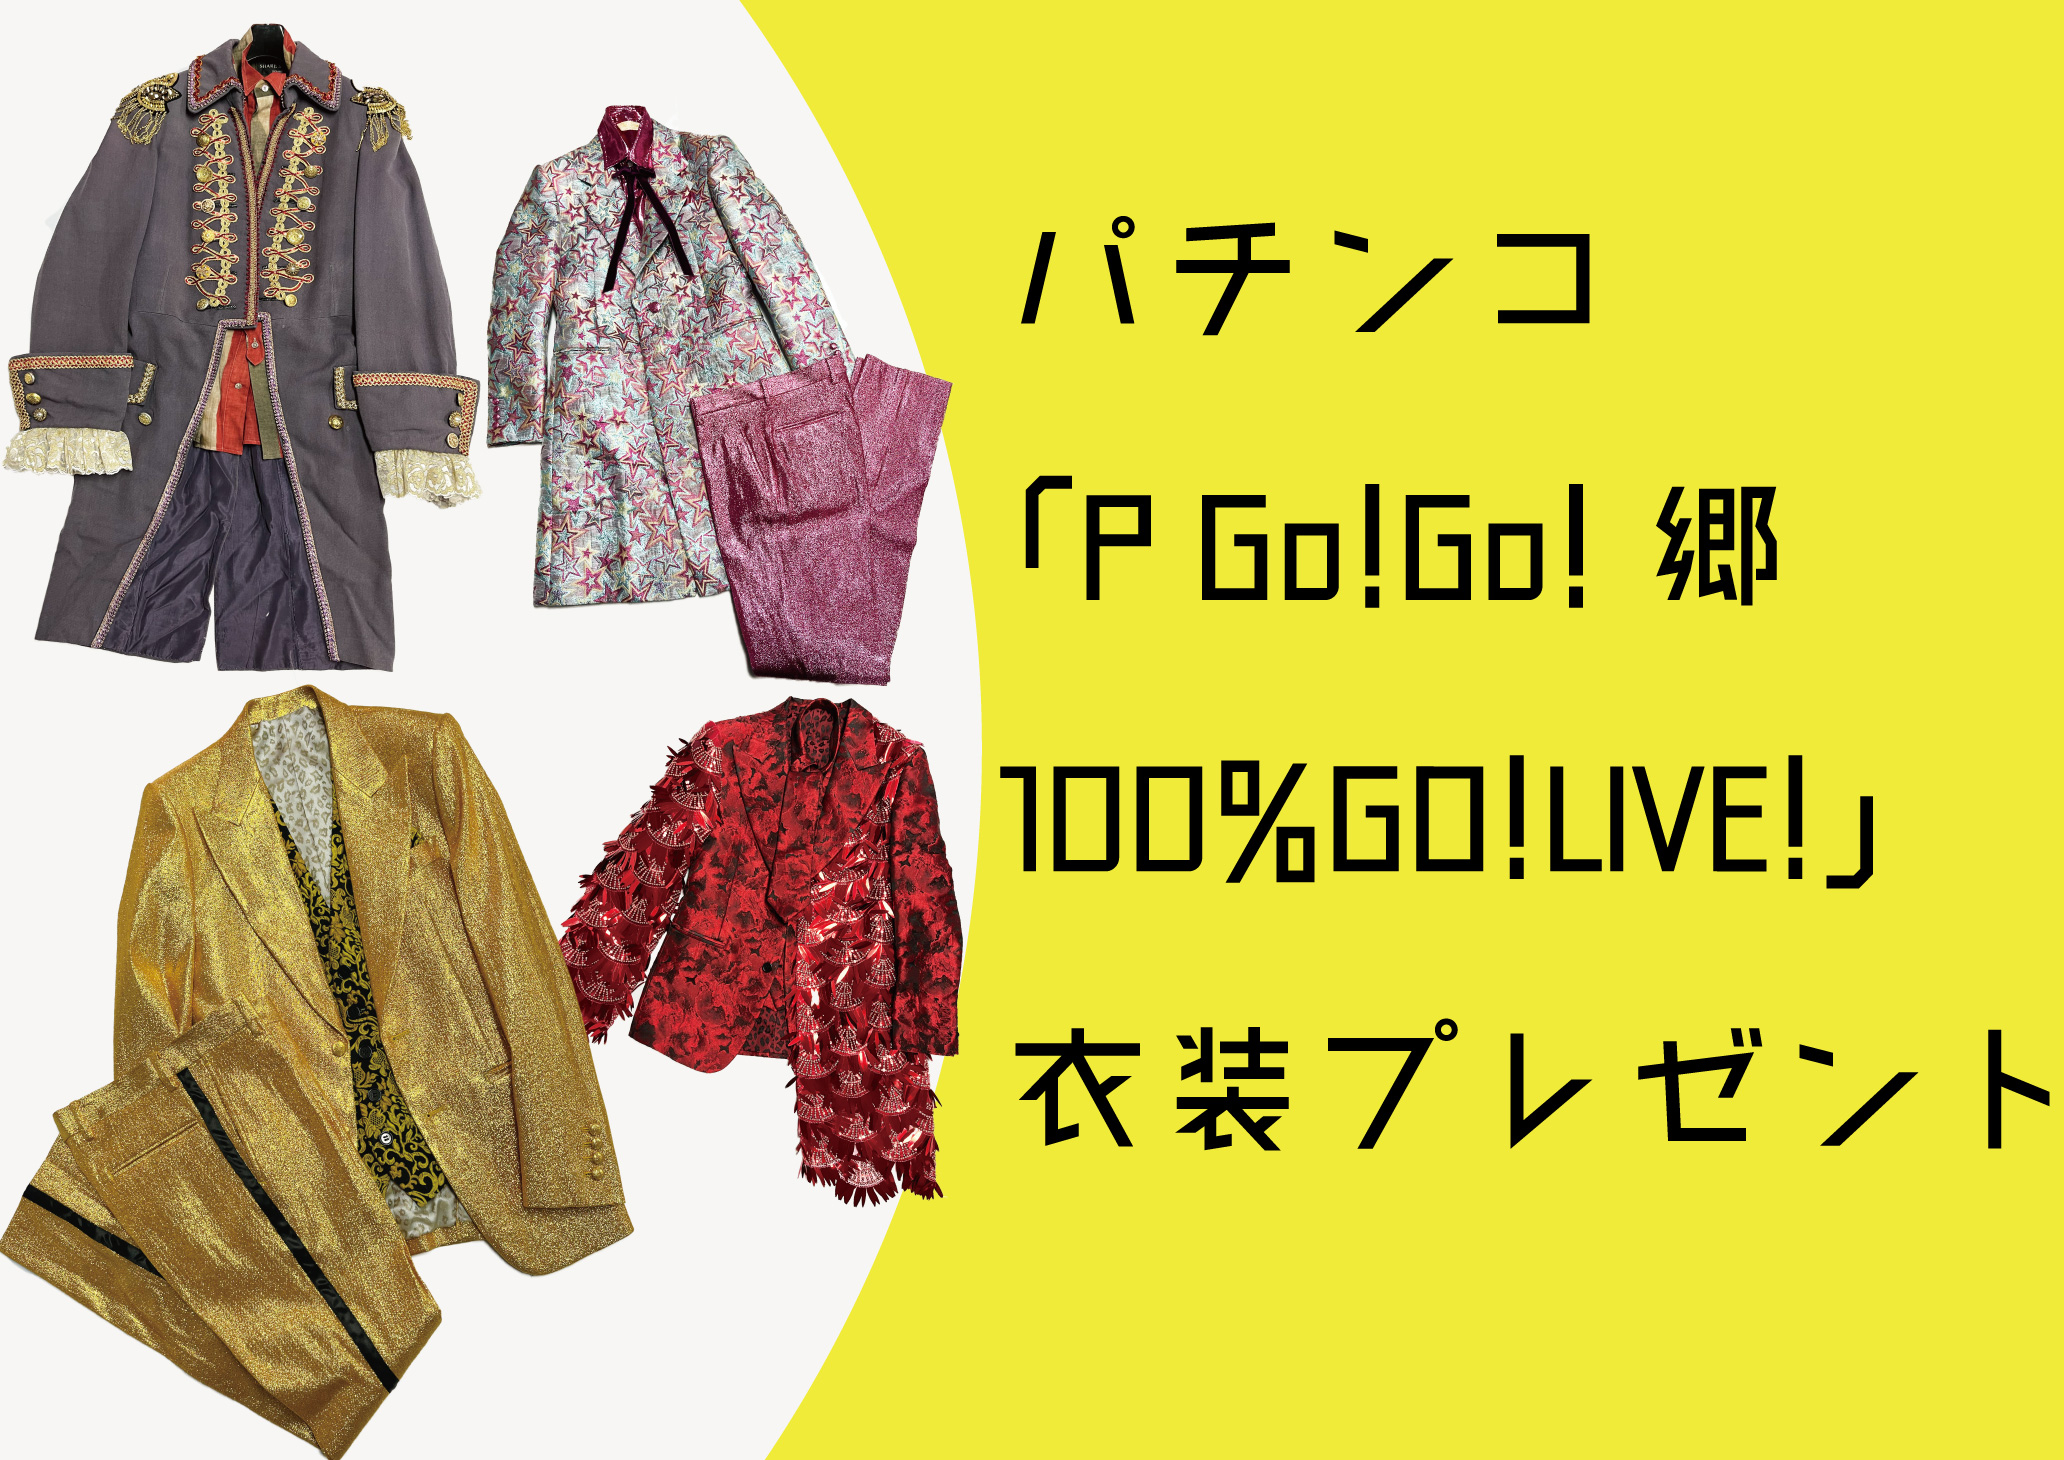 パチンコ「P Go!Go!郷 100%GO!LIVE!」衣装プレゼント